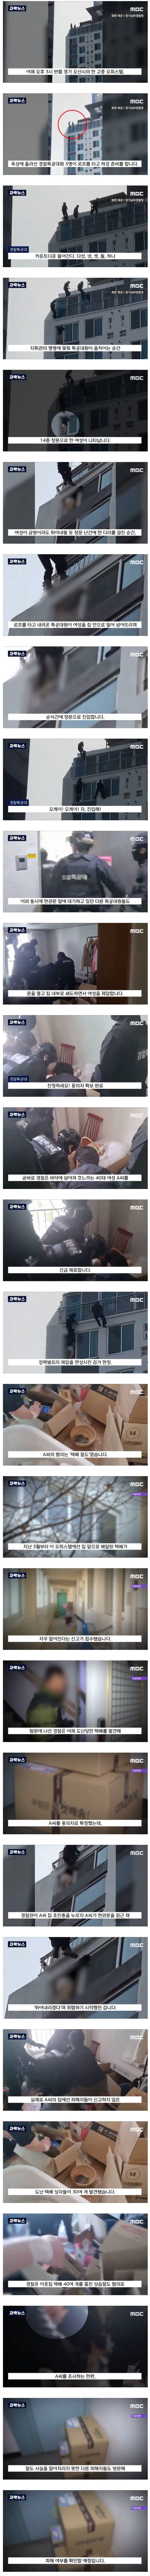 14층 창문 밖 위태로운 여성의 결말 | mbong.kr 엠봉